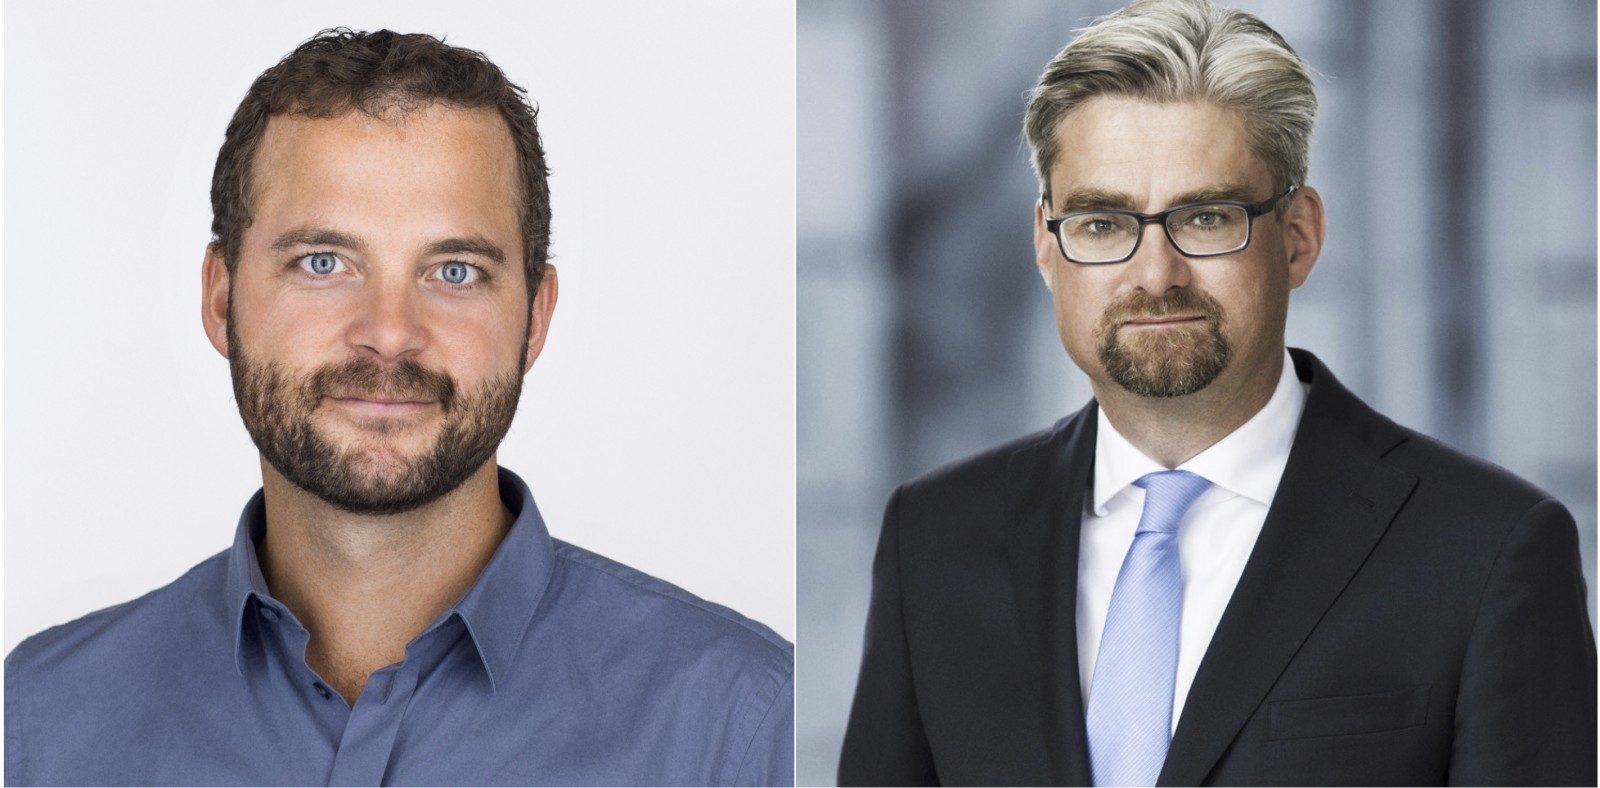 Politisk Salon fredag 3. november 16.30-18 i Det Kgl med RÆSON: Morten Østergaard og Søren Pind